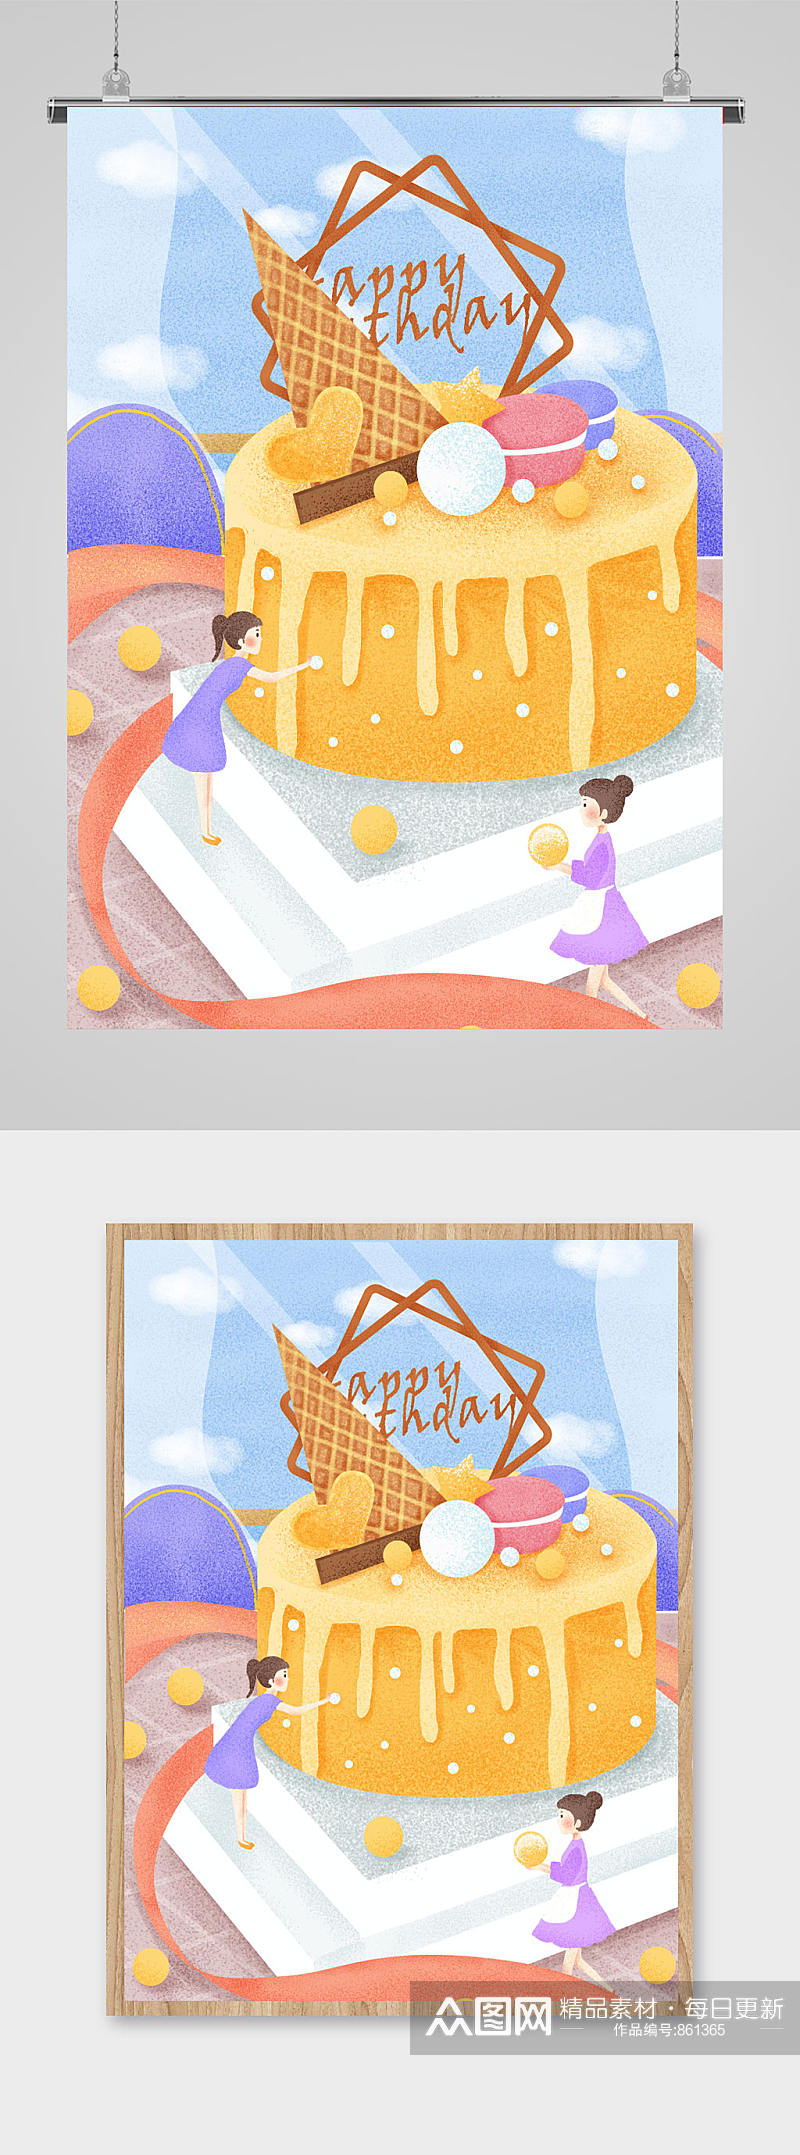 美食甜点蛋糕插画素材